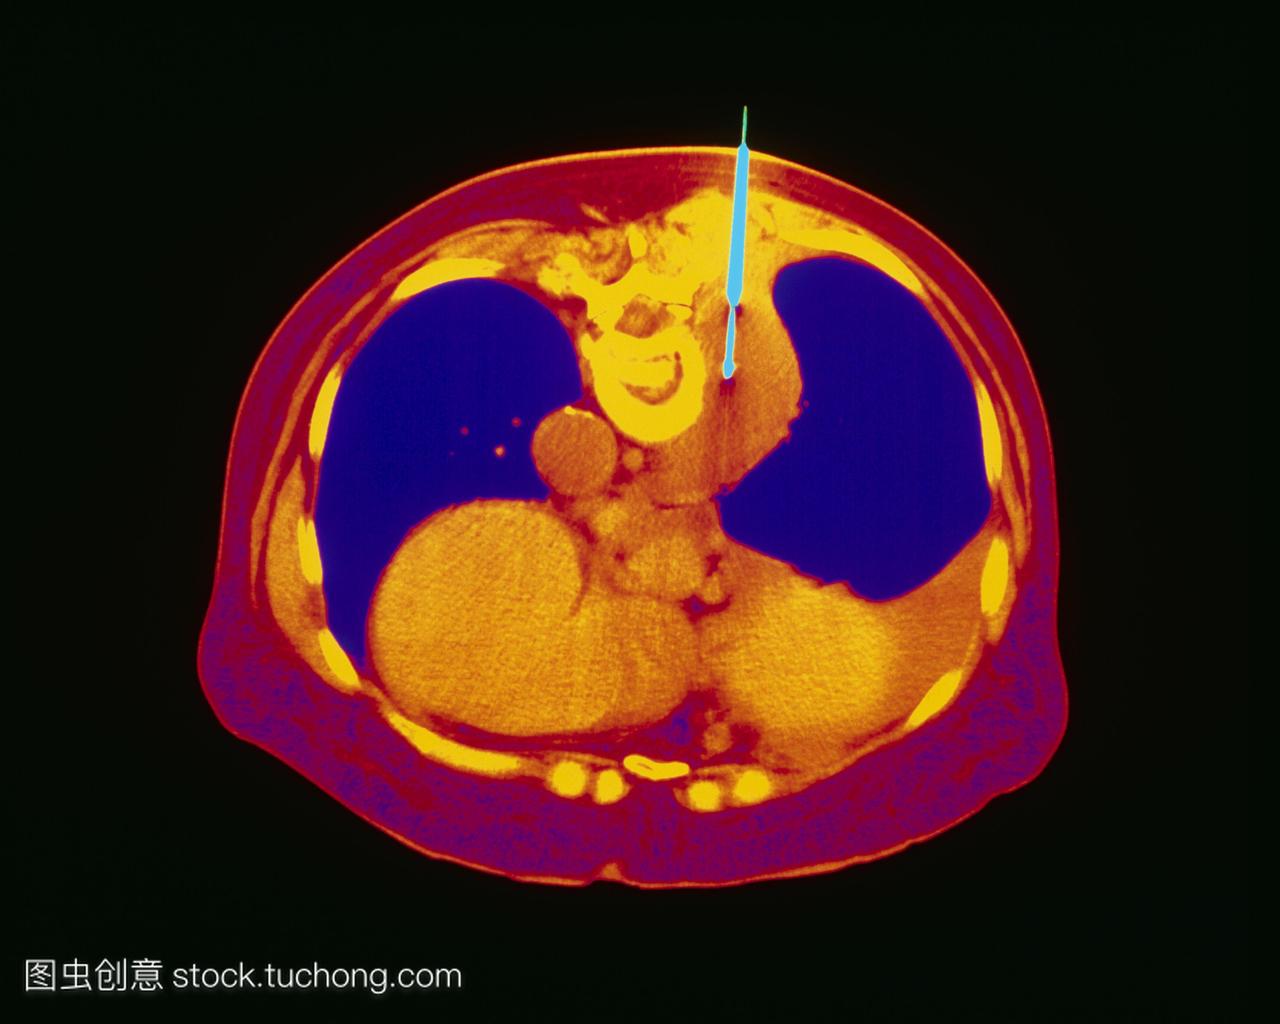 肺活检。彩色计算机断层扫描ct扫描在人的胸部